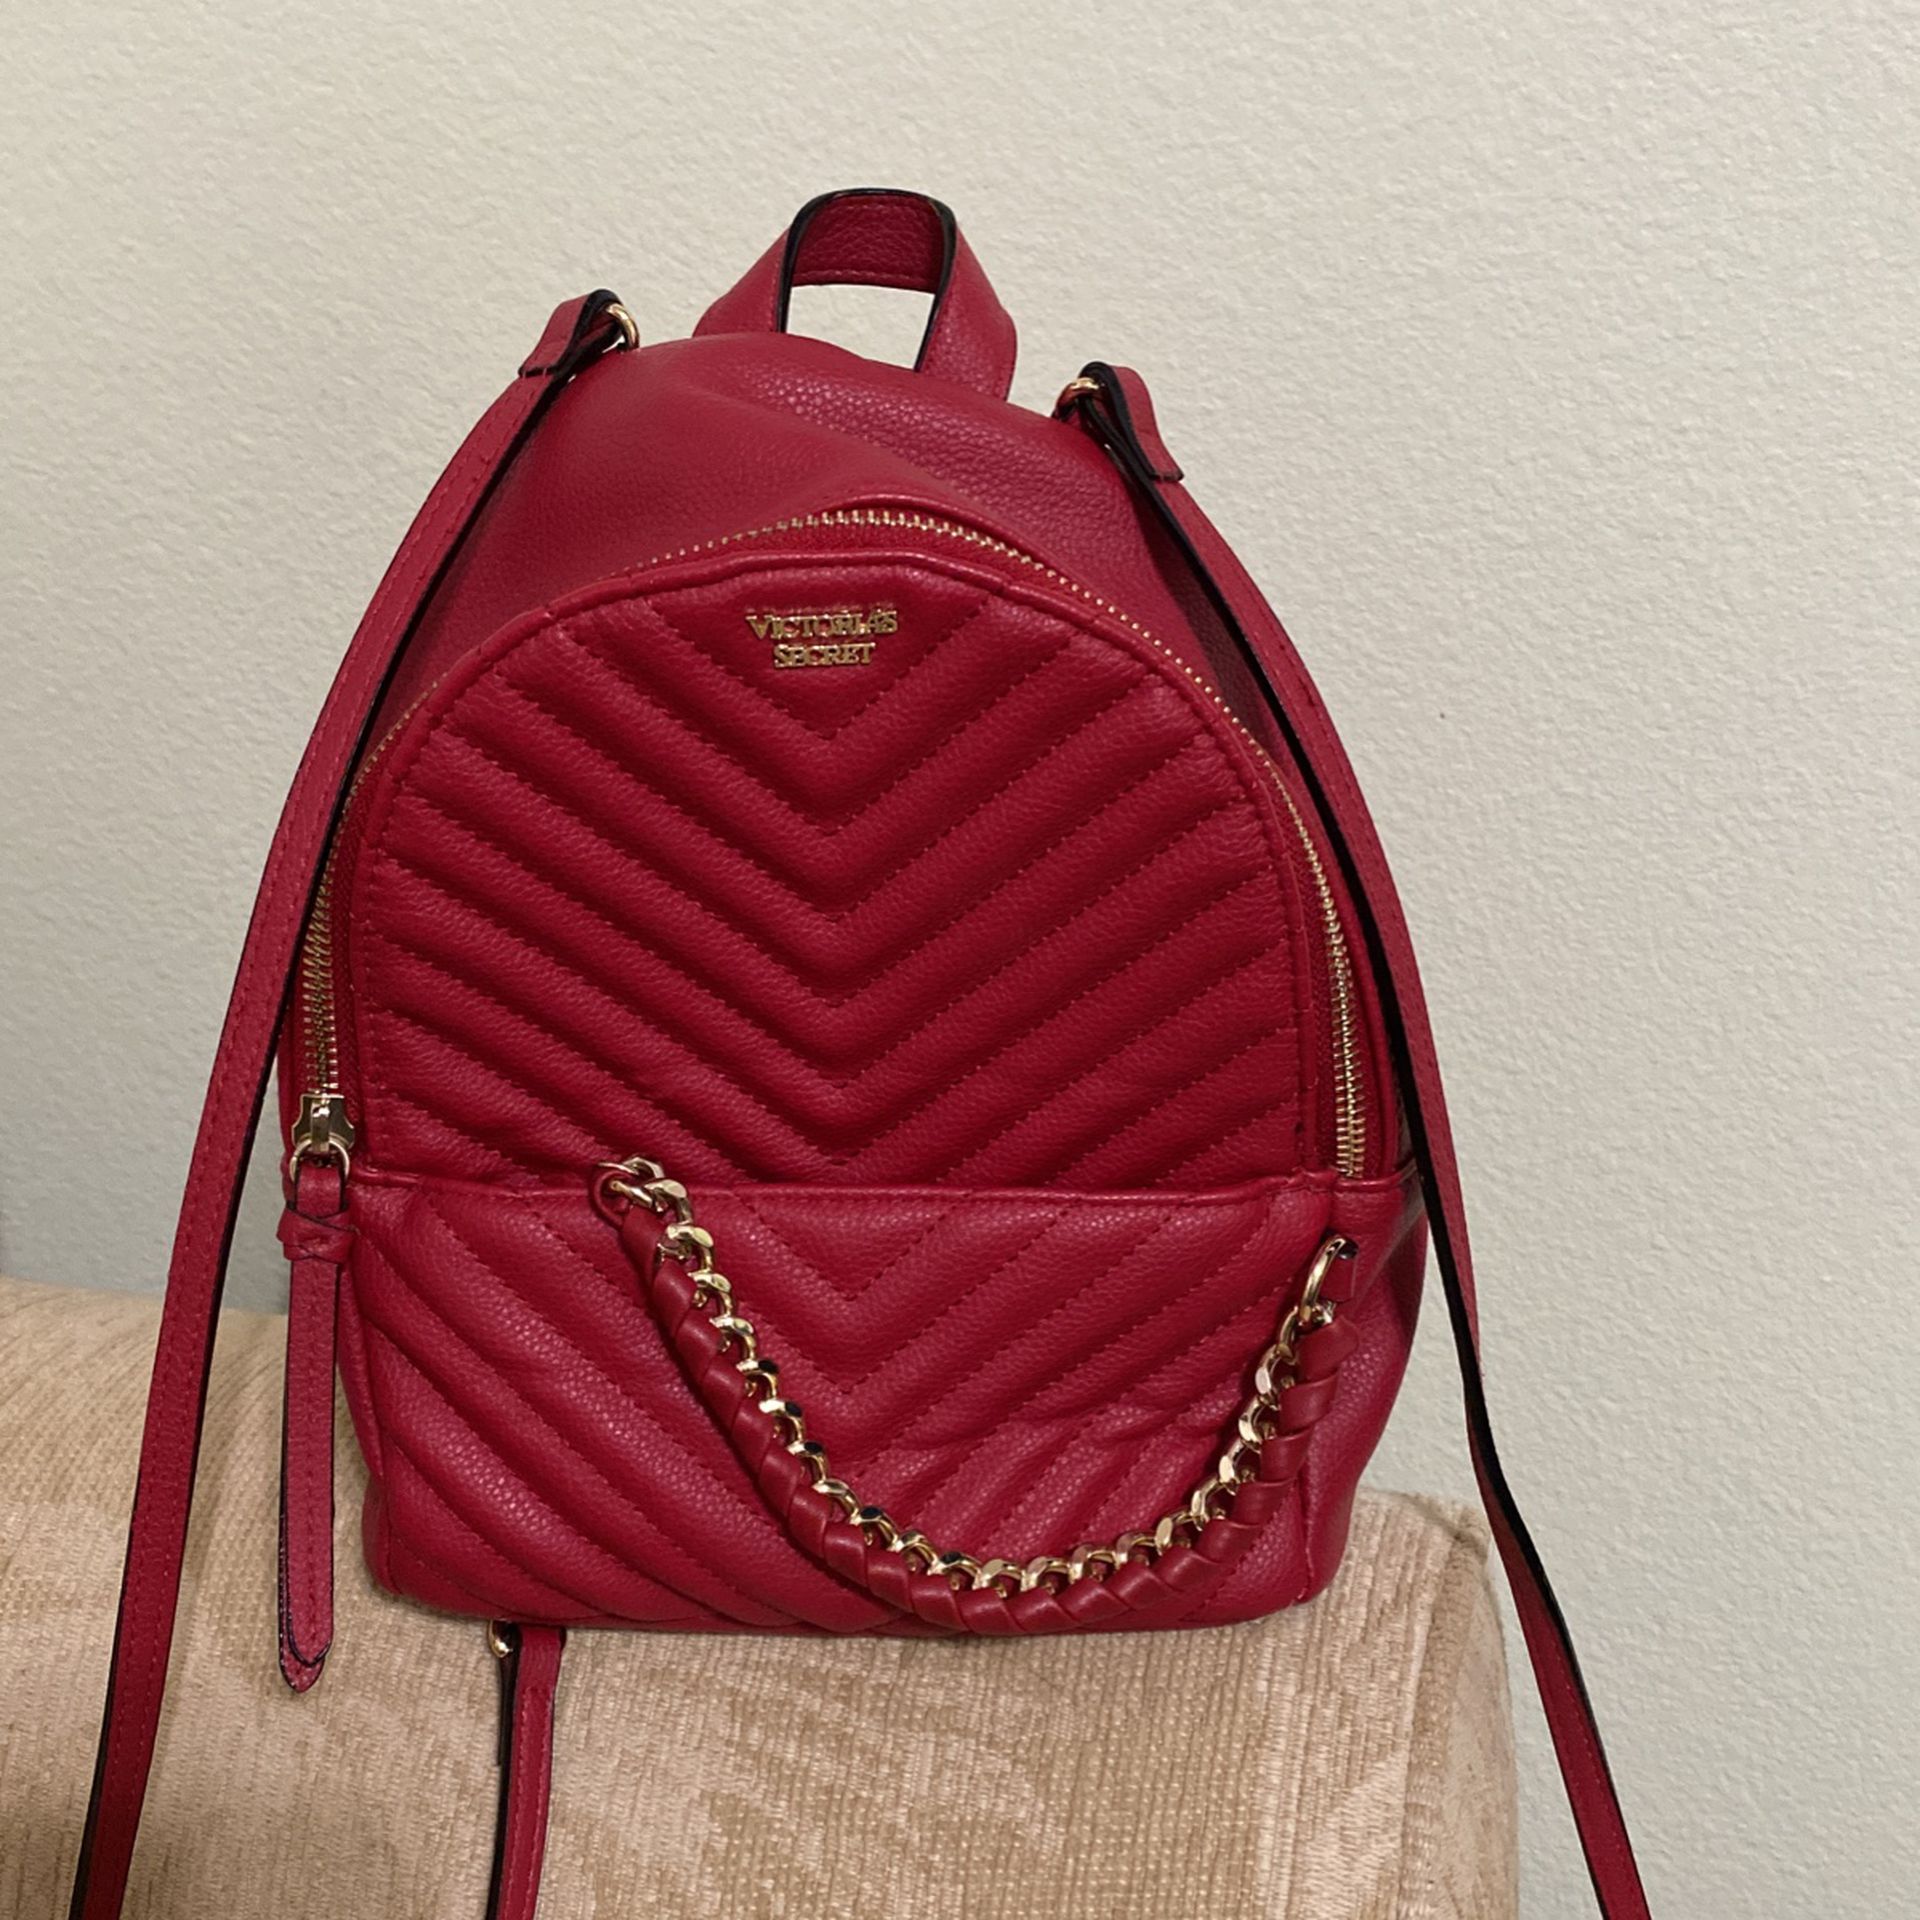 Victoria's Secret Red Backpacks